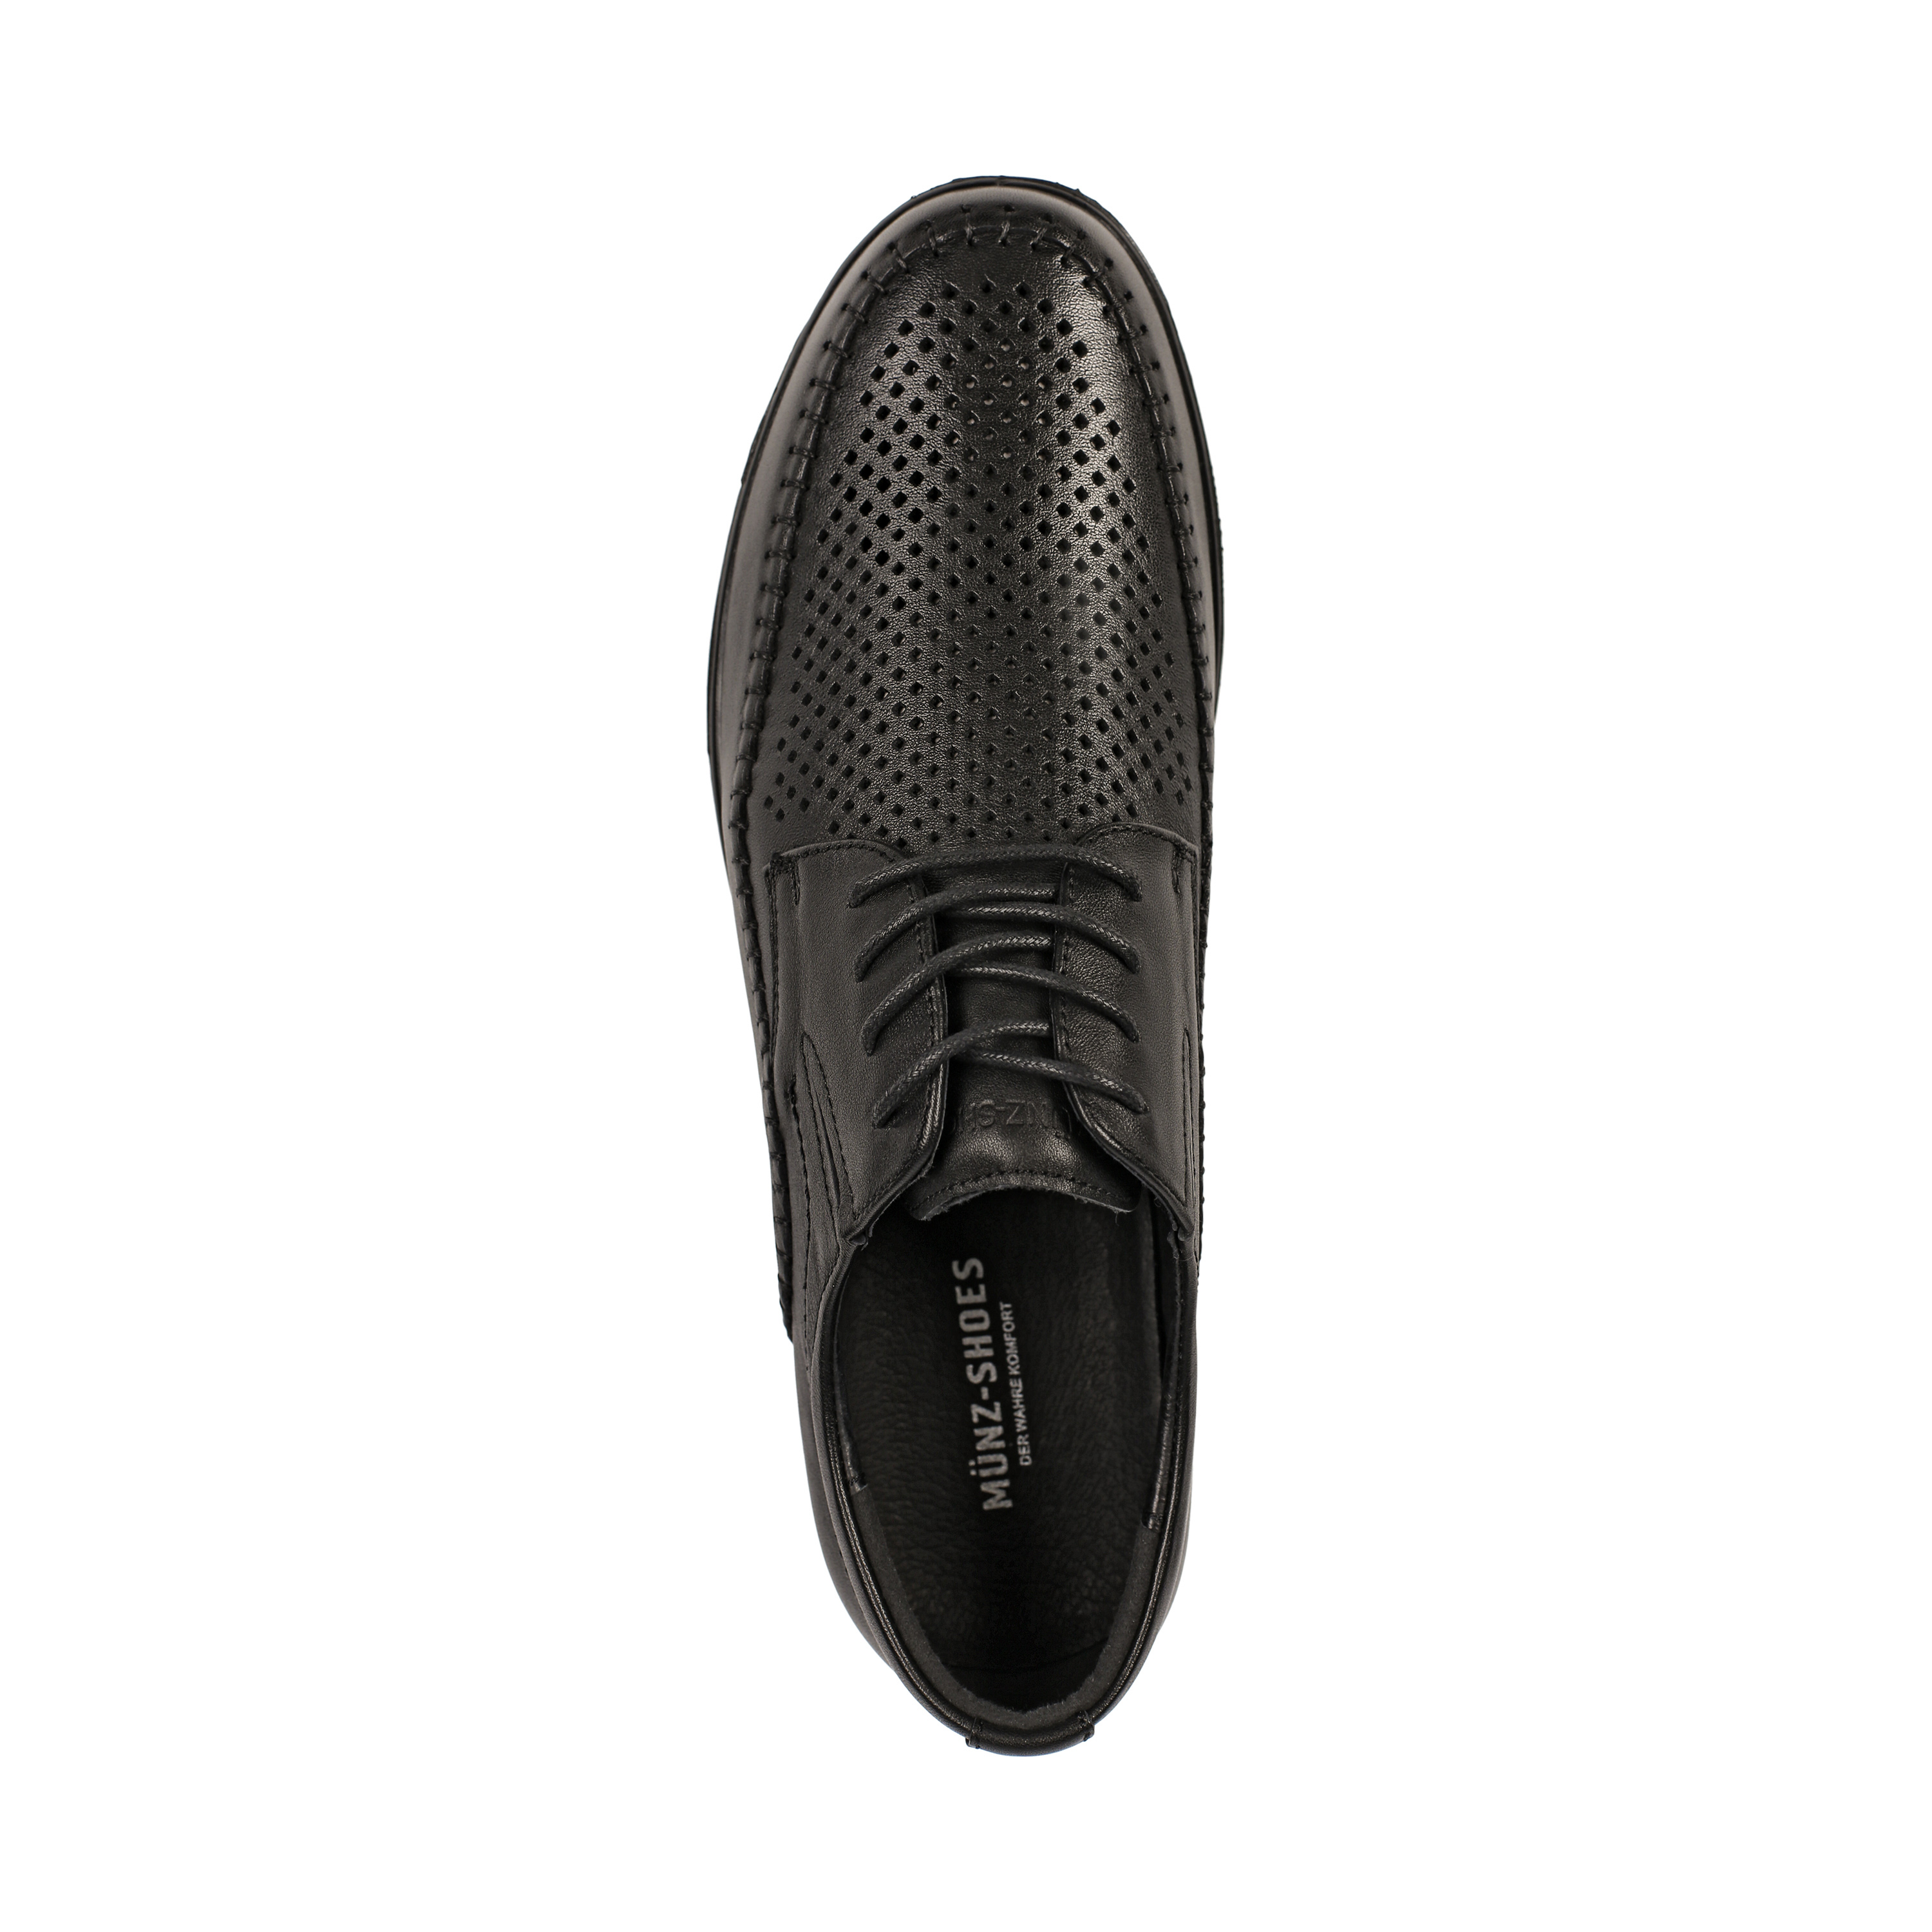 Туфли MUNZ Shoes 059-016A-1102 059-016A-1102, цвет черный, размер 40 полуботинки - фото 5